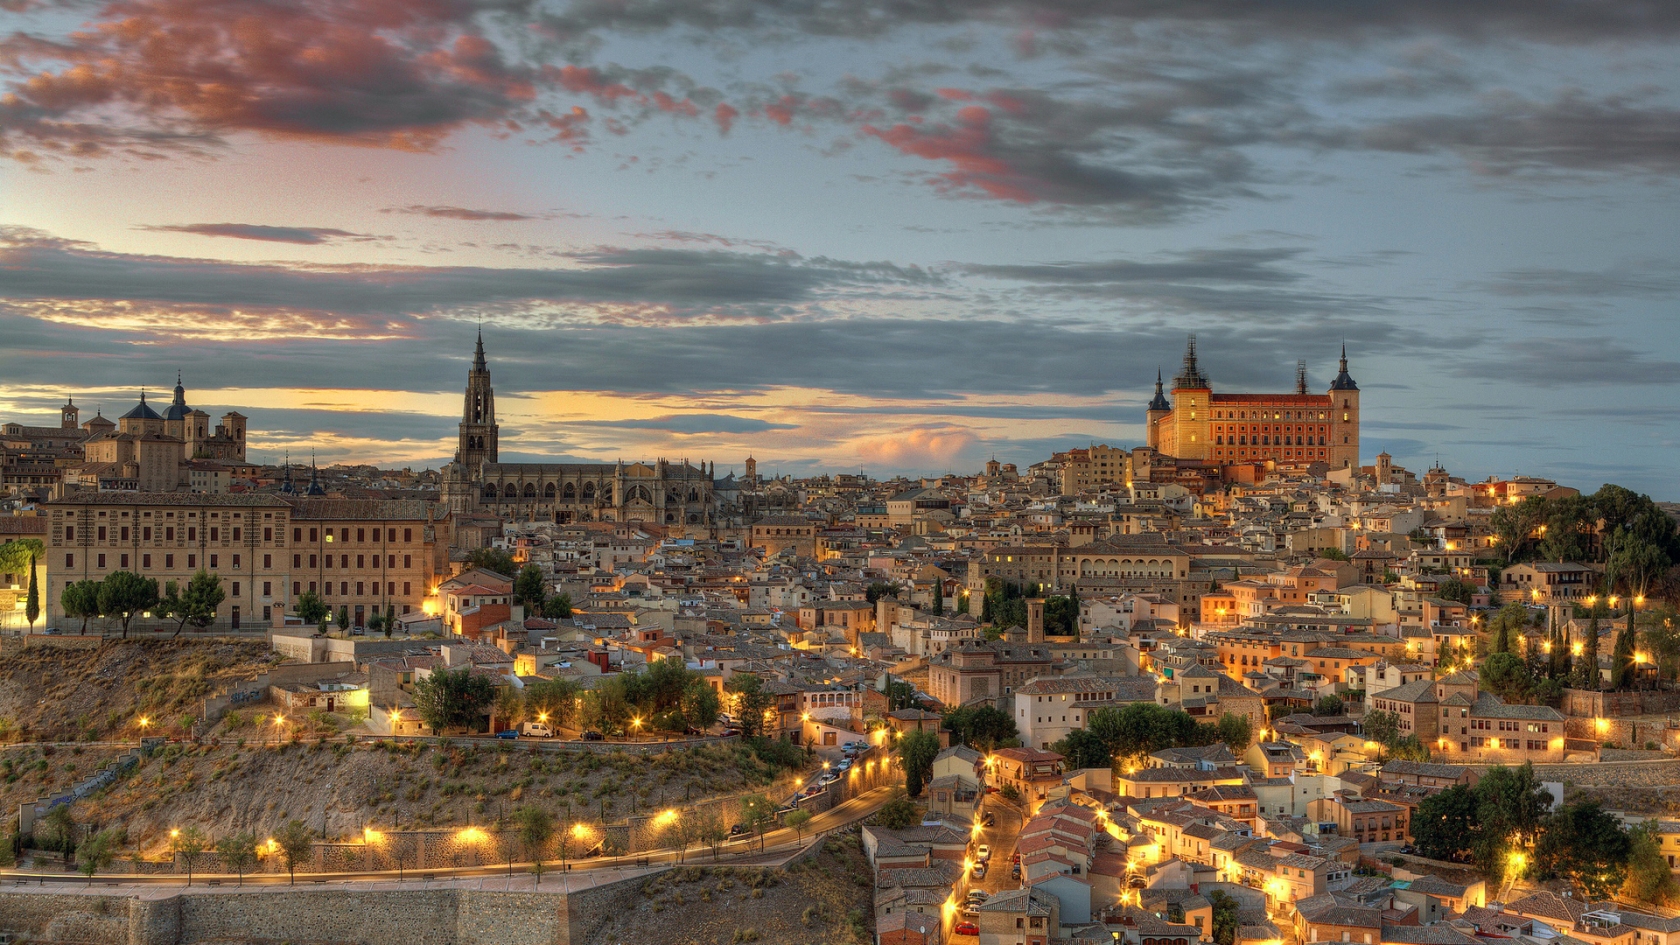 Toledo Spain Landscape for 1680 x 945 HDTV resolution